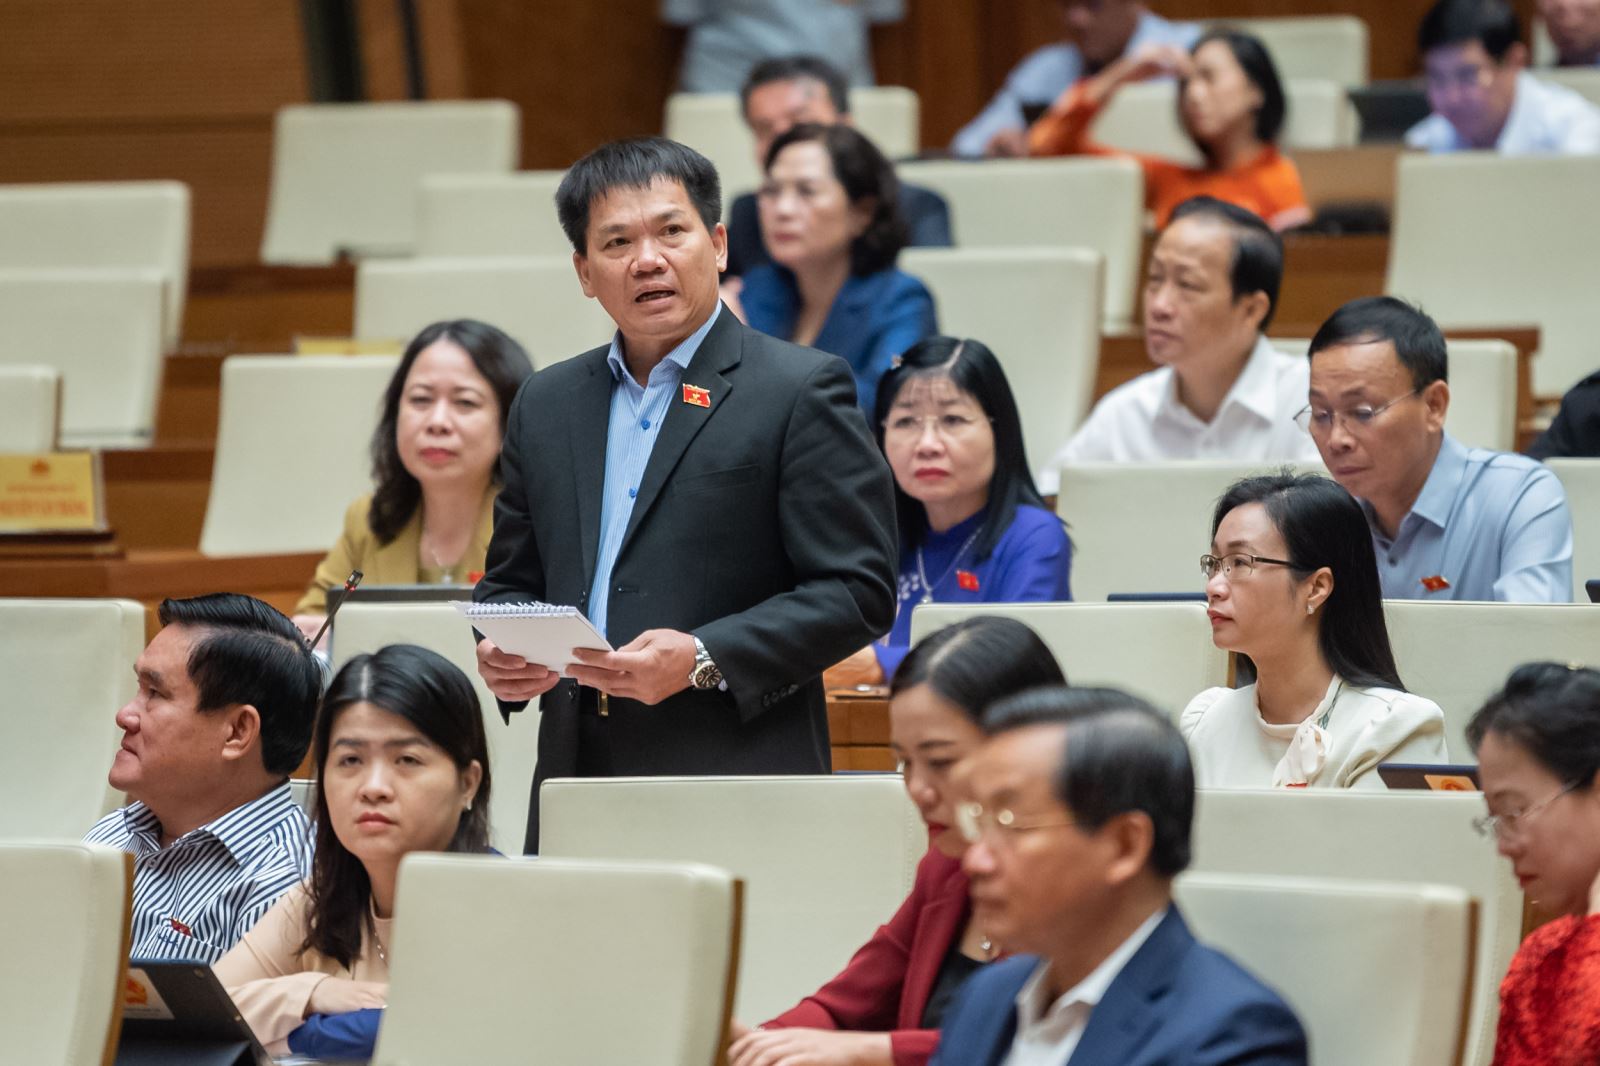 Đại biểu Dương Khắc Mai (Đoàn ĐBQH tỉnh Đắk Nông) tranh luận với Bộ trưởng Bộ Y tế.